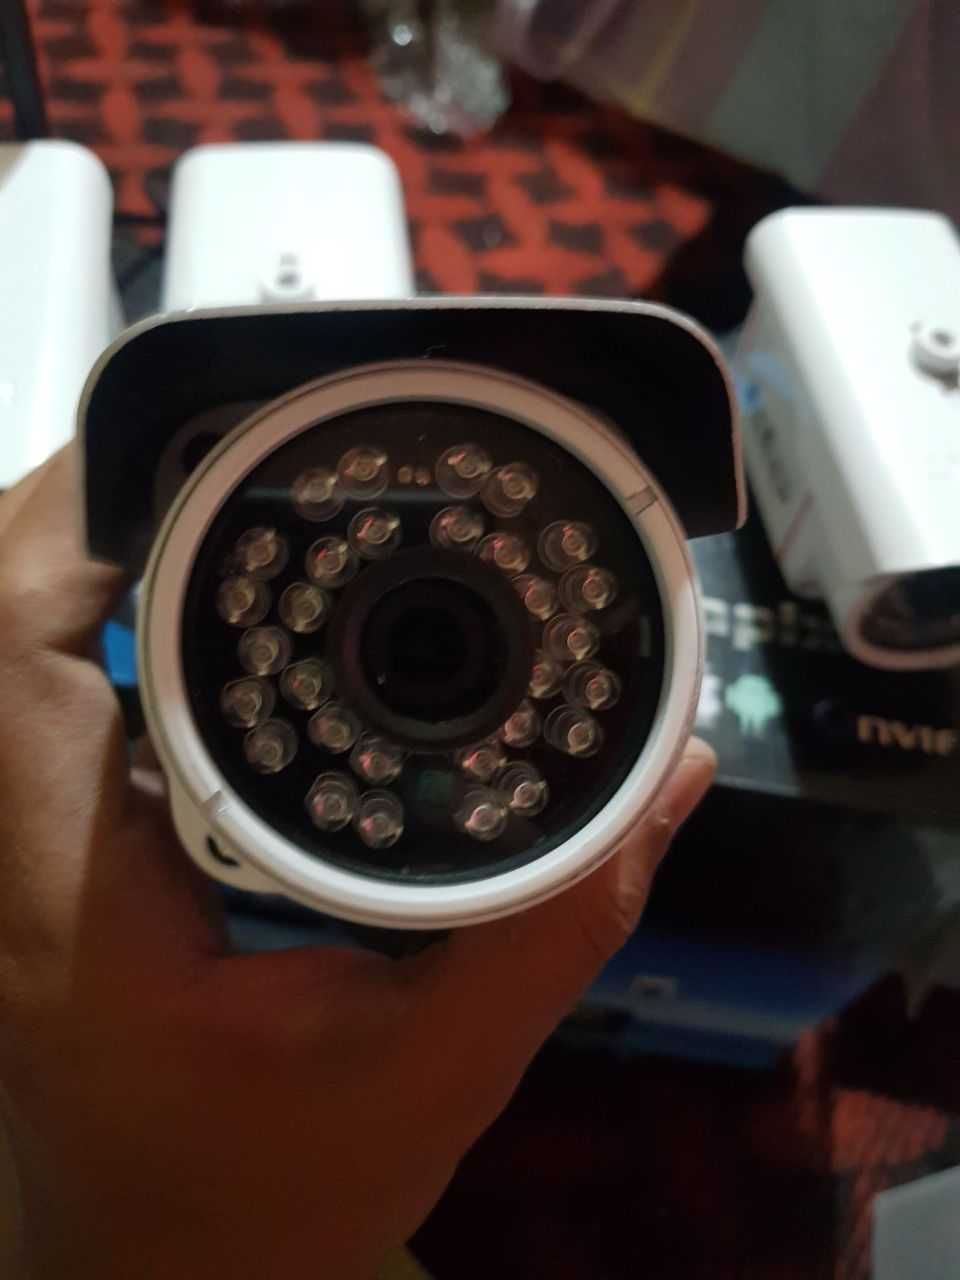 Беспроводная система видеонаблюдения 4 камеры. Беспроводные по wifi